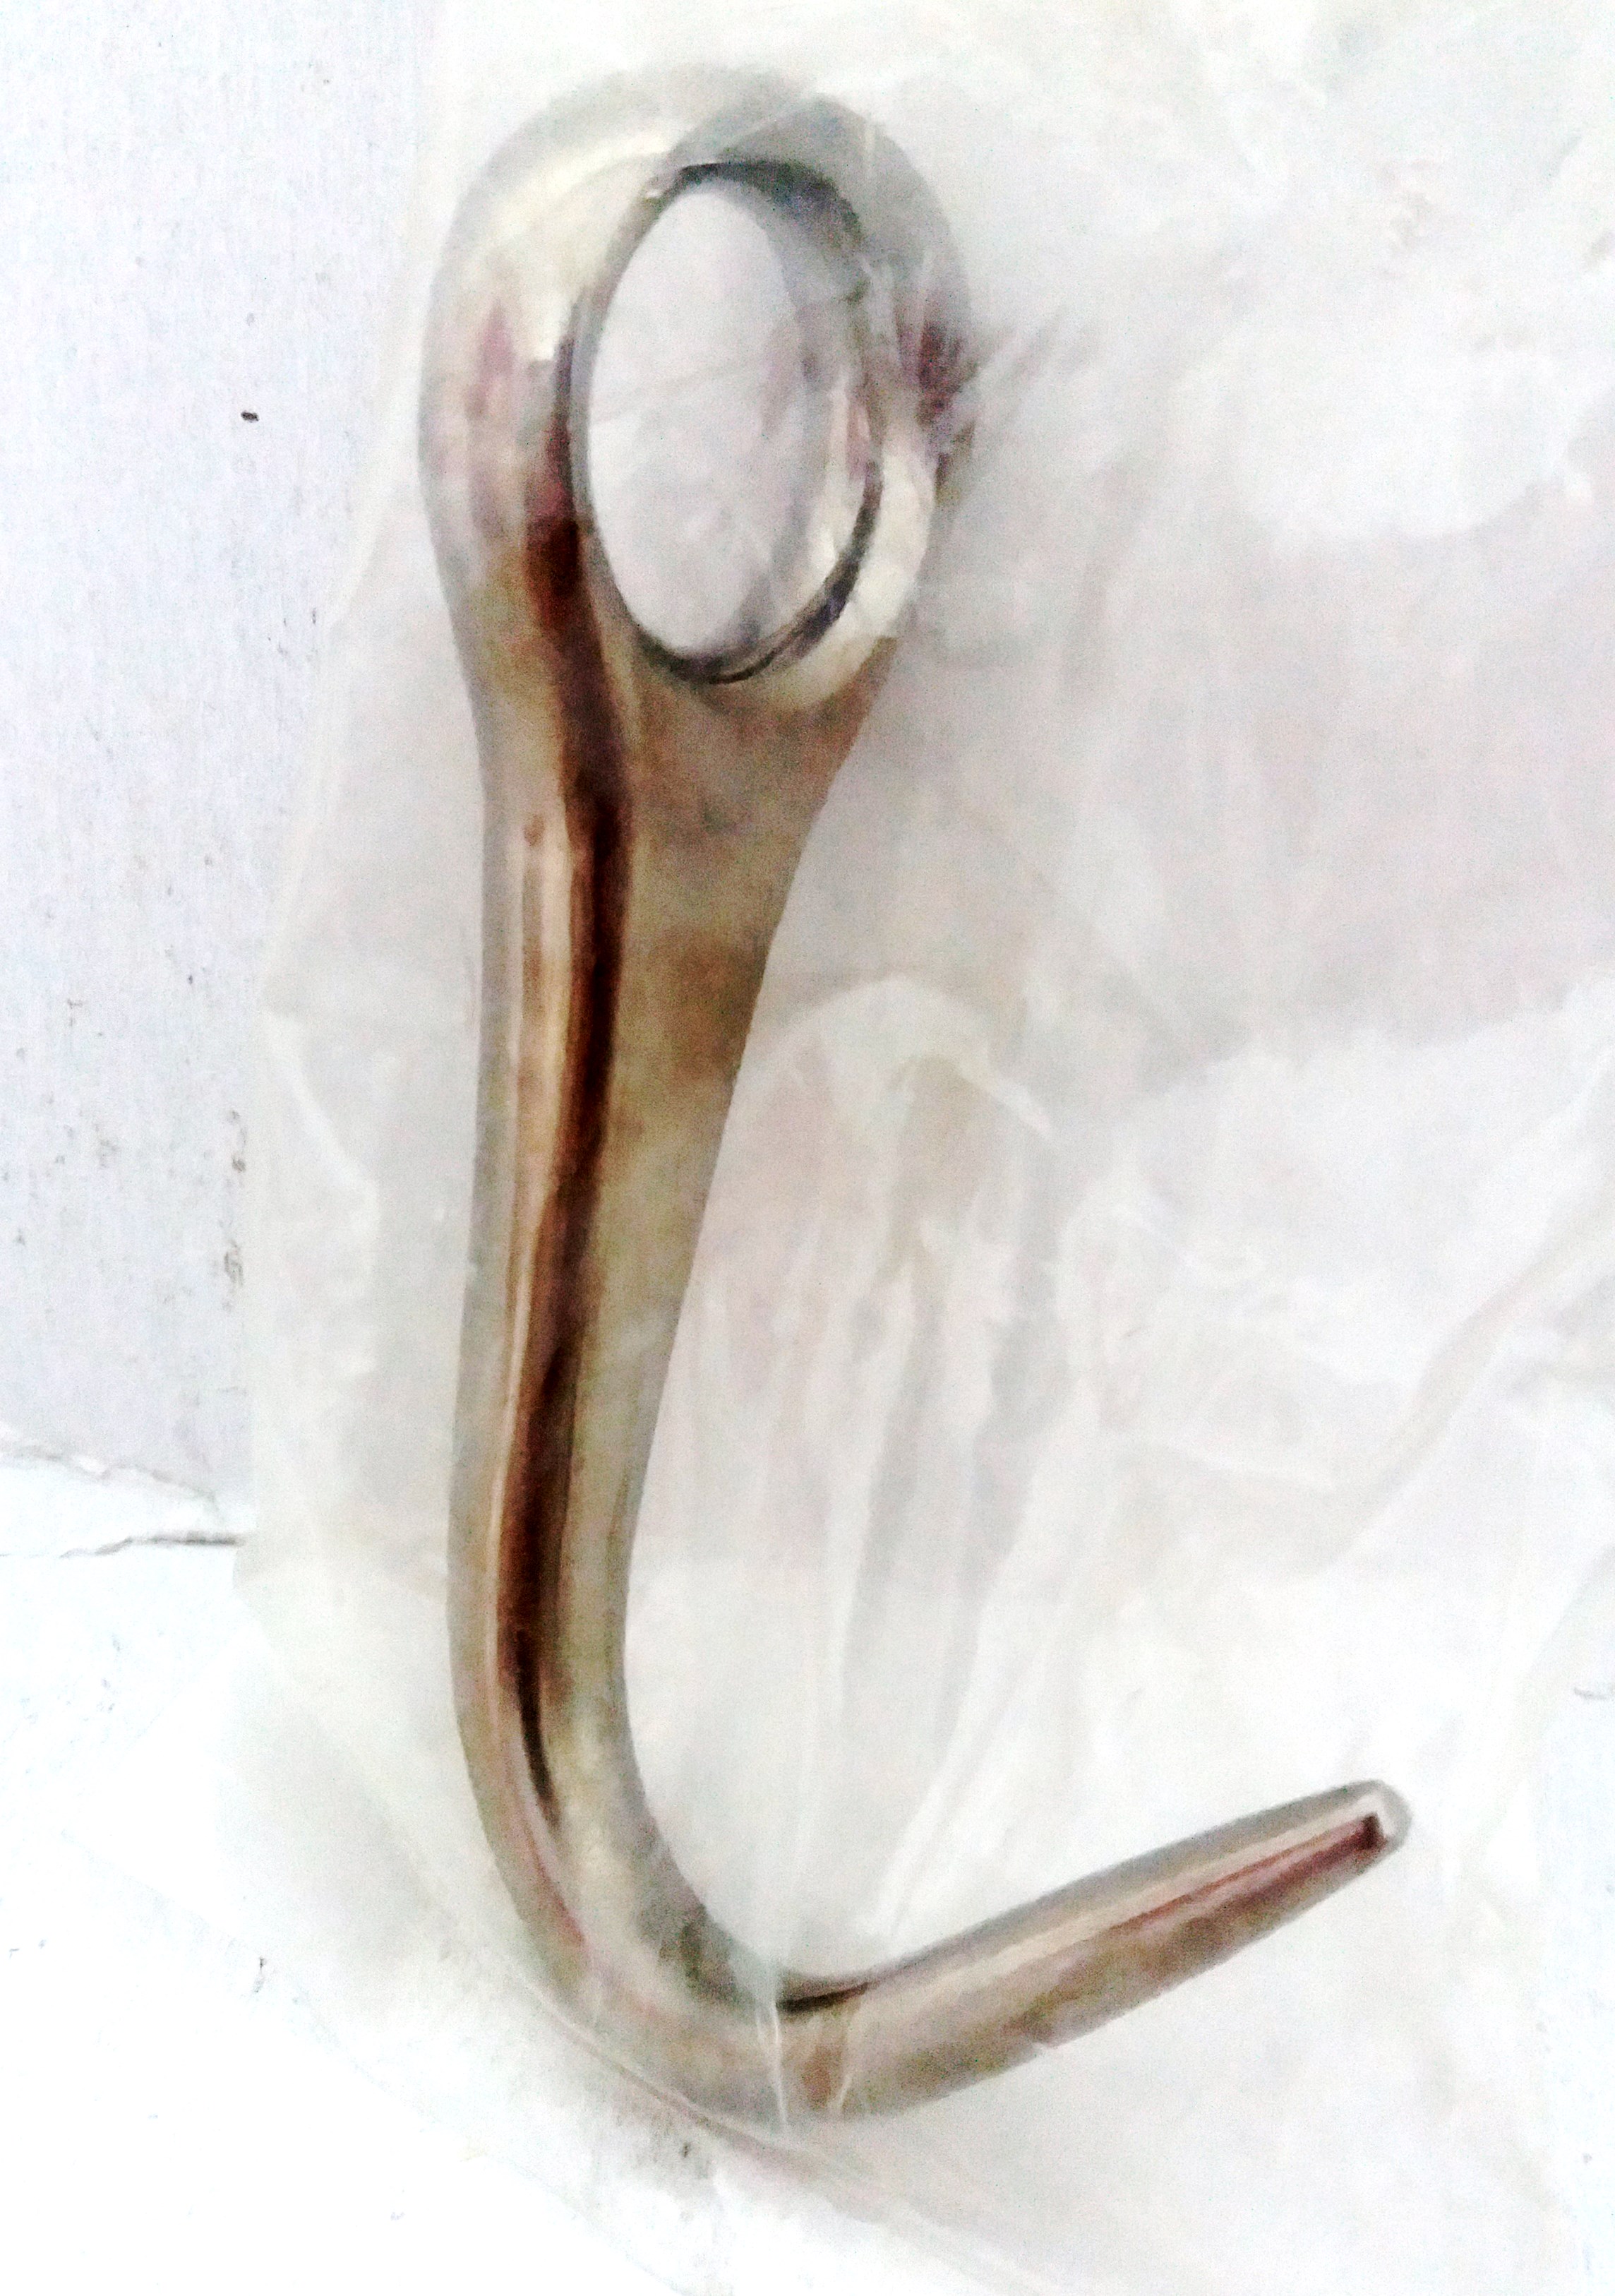 Άγκιστρο οφθαλμικό αμβλύ, 8 cm